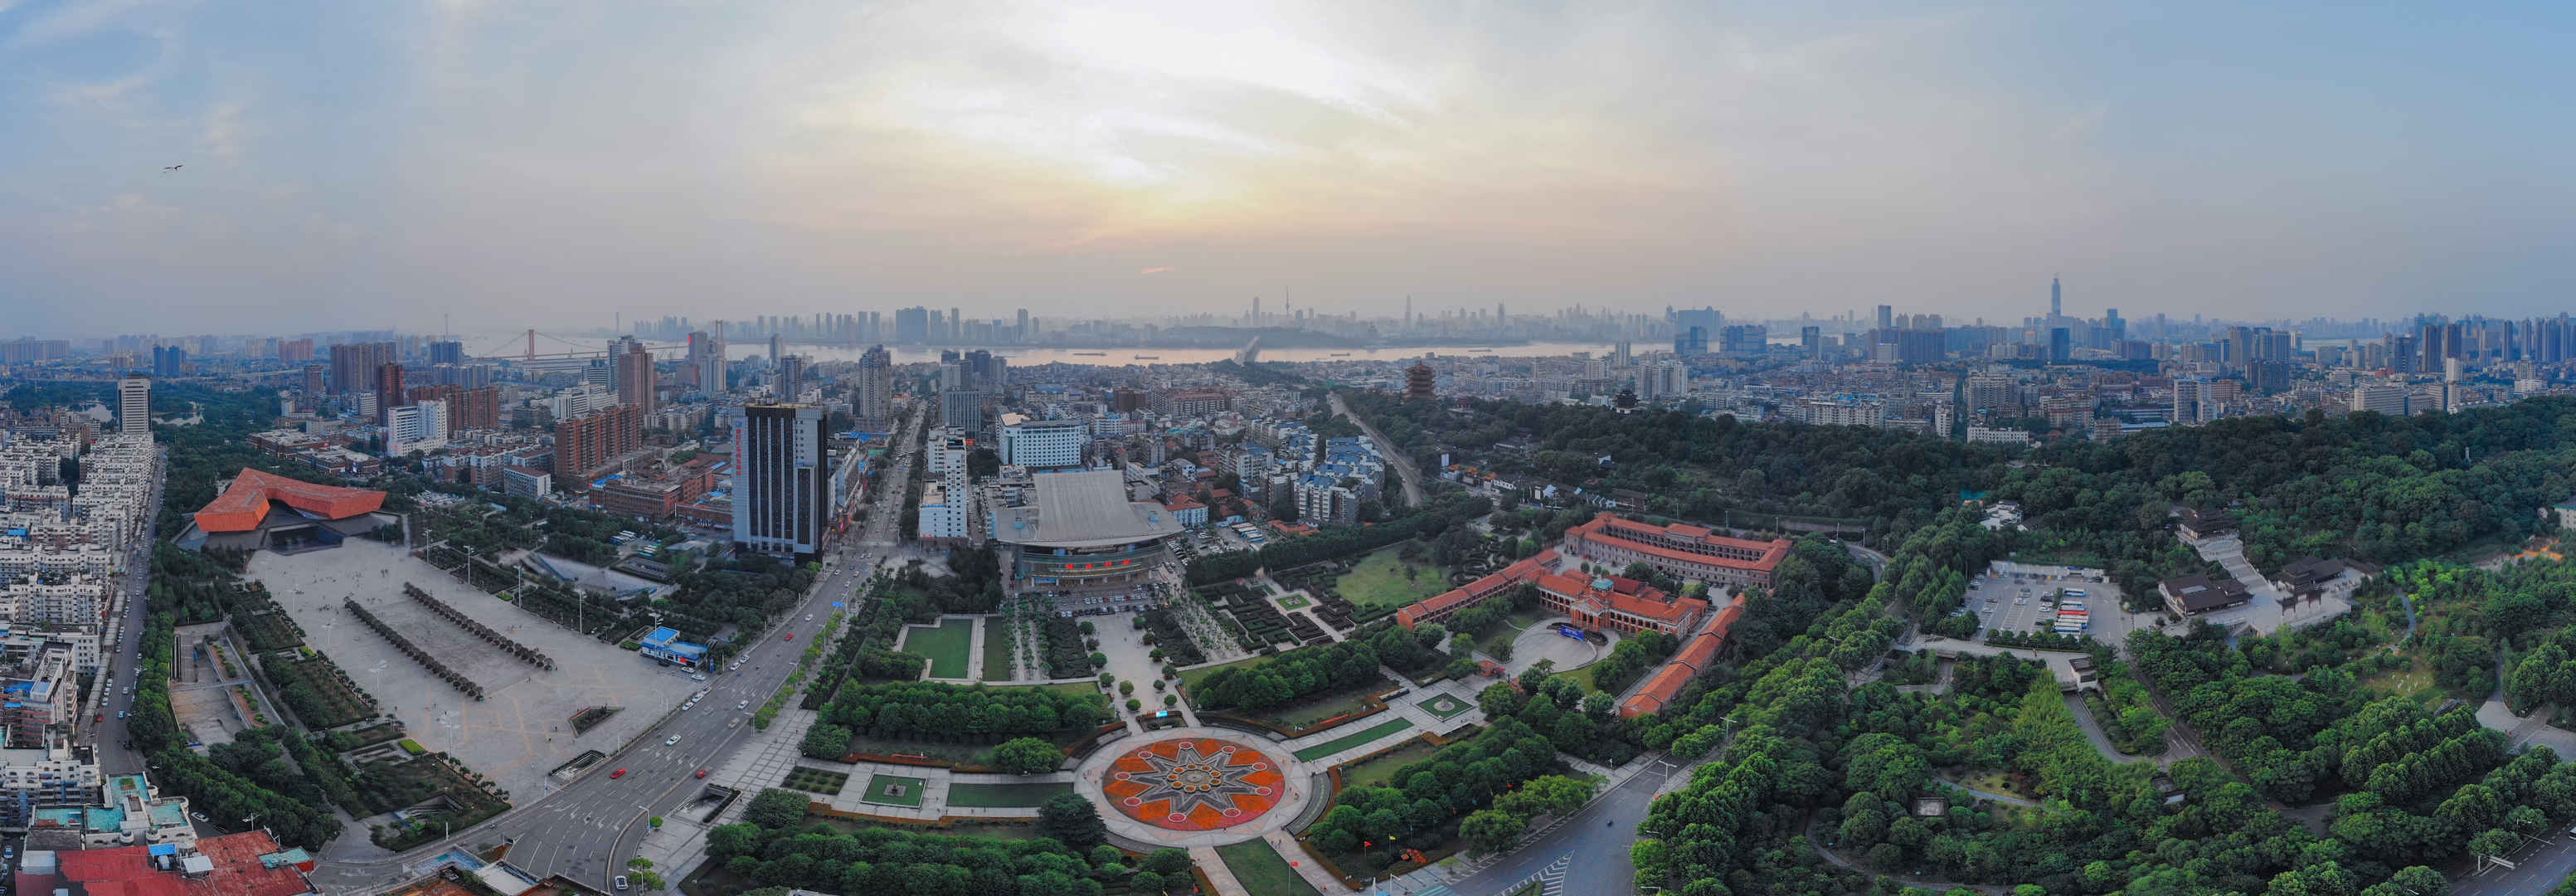 湖北武汉建筑风景图片